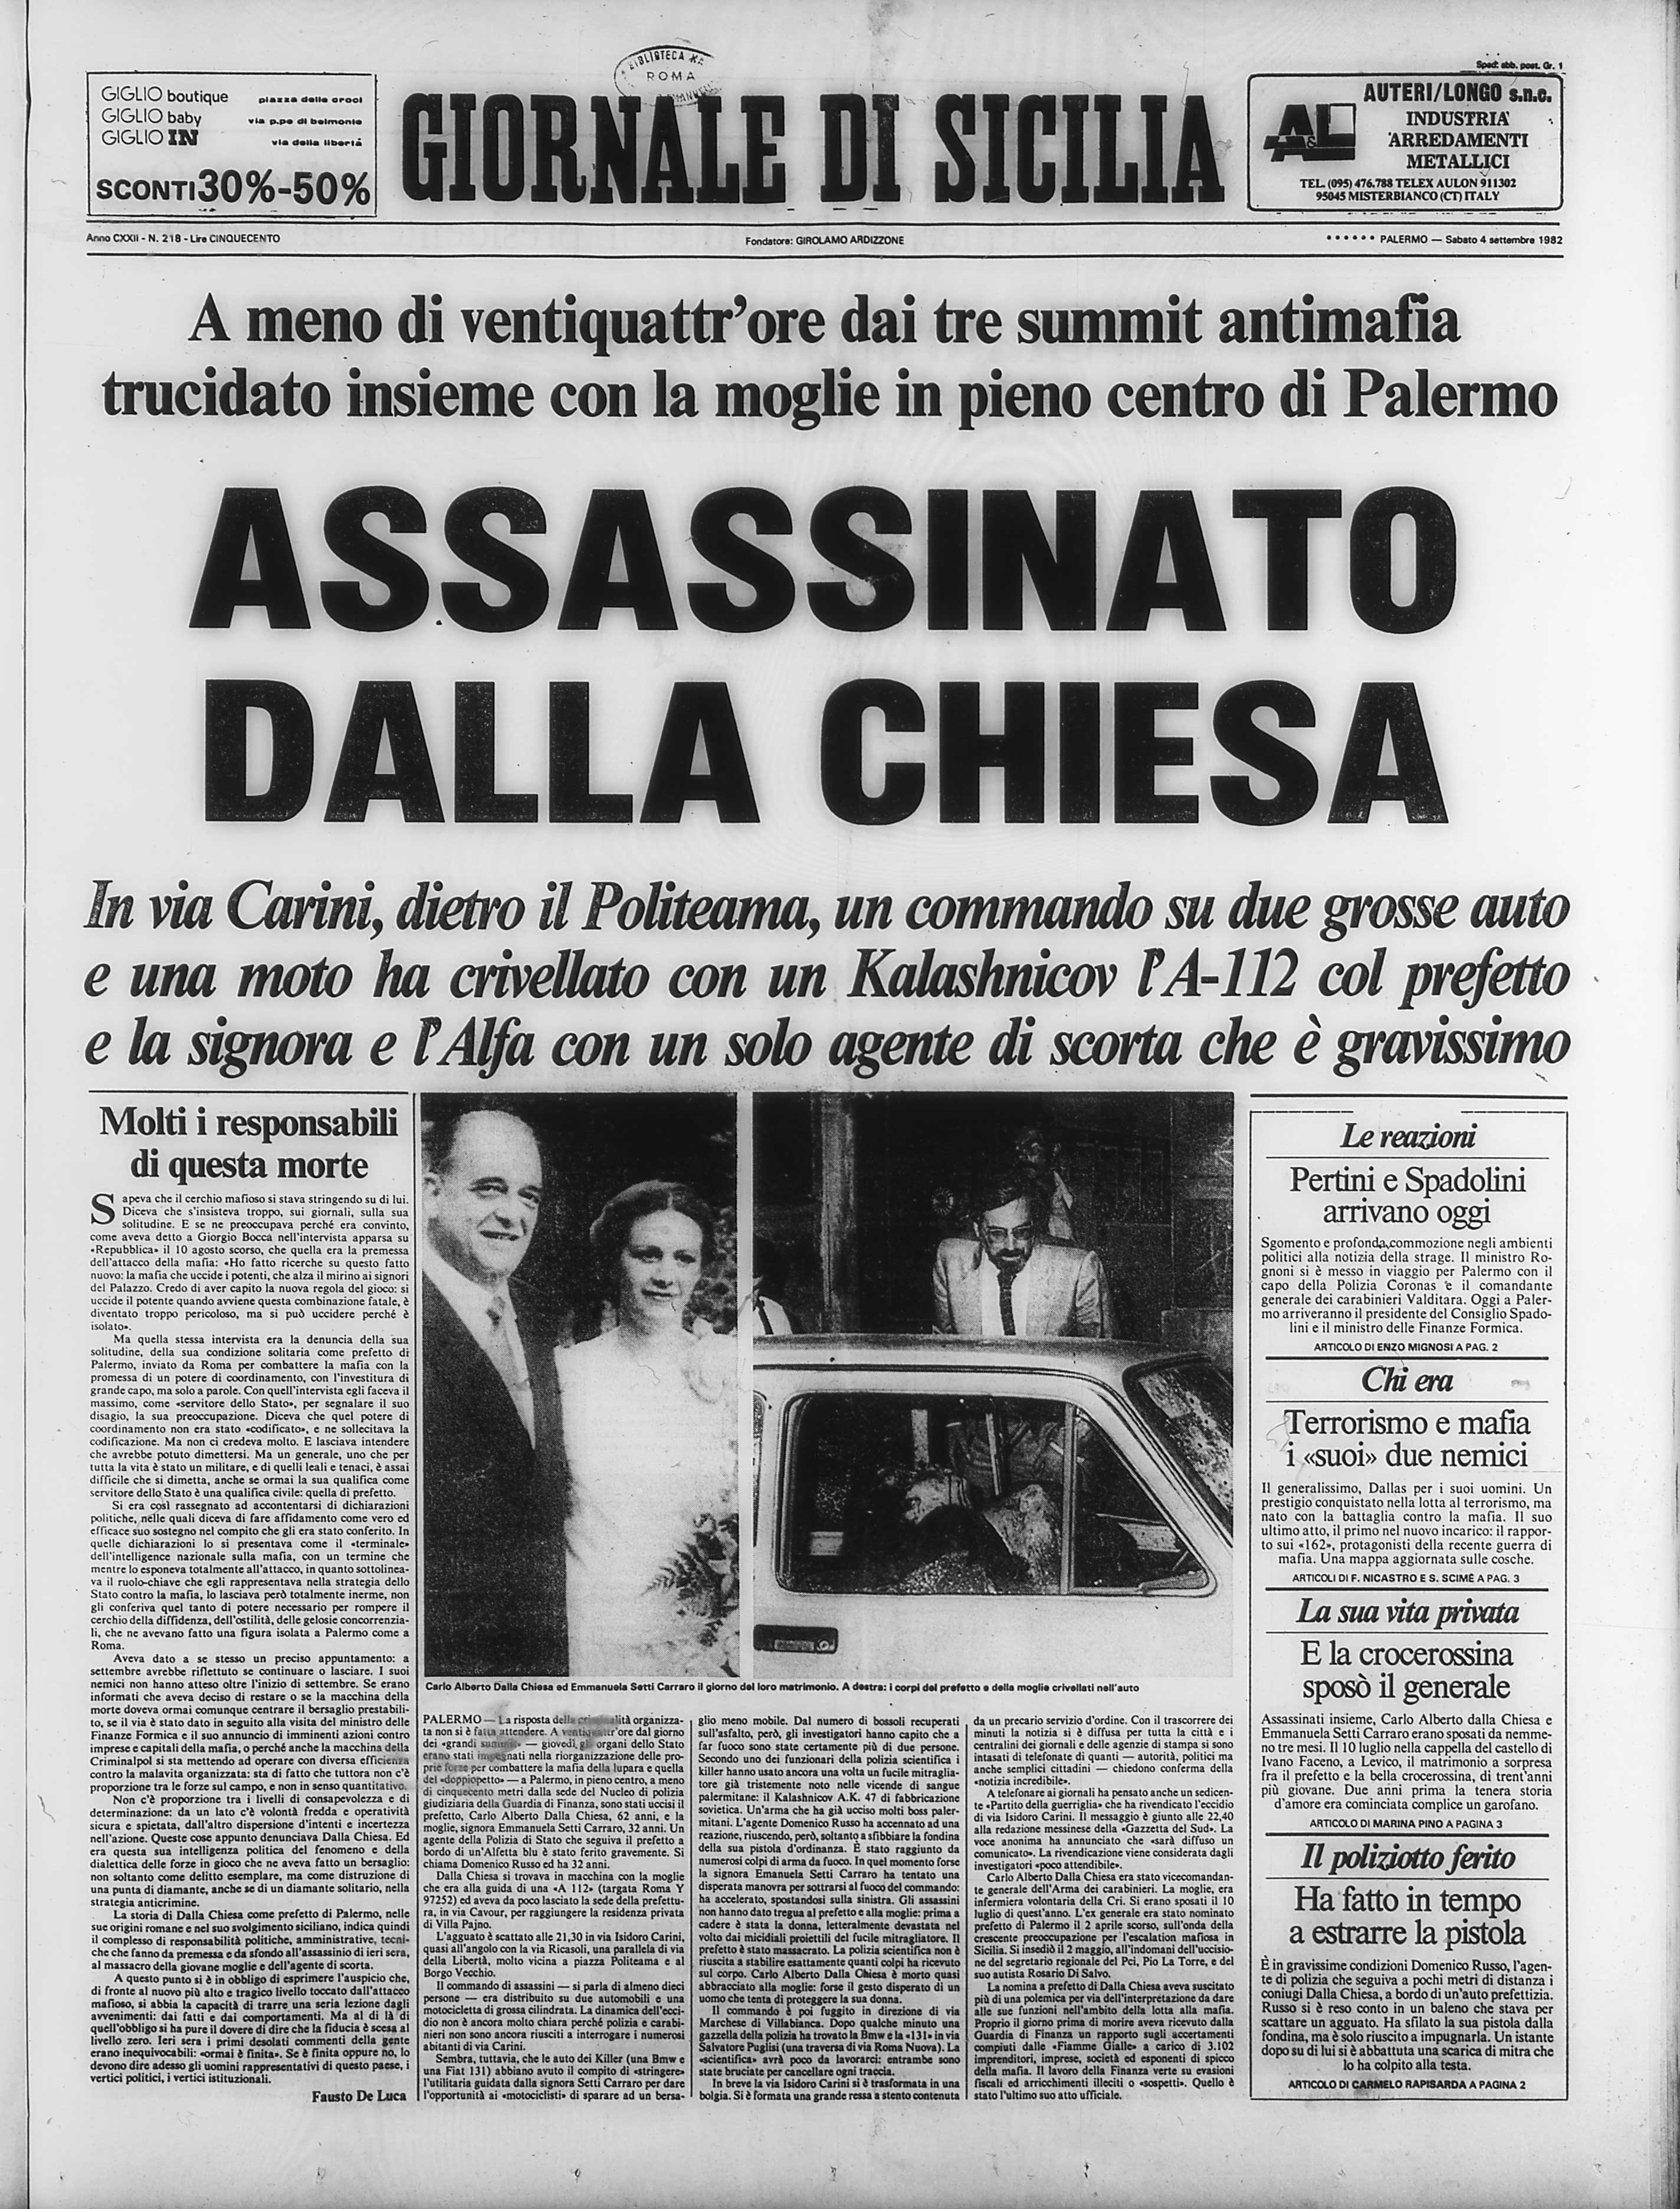 Fig4 Giornale di Sicilia 04:09:1982 p.1.jpg